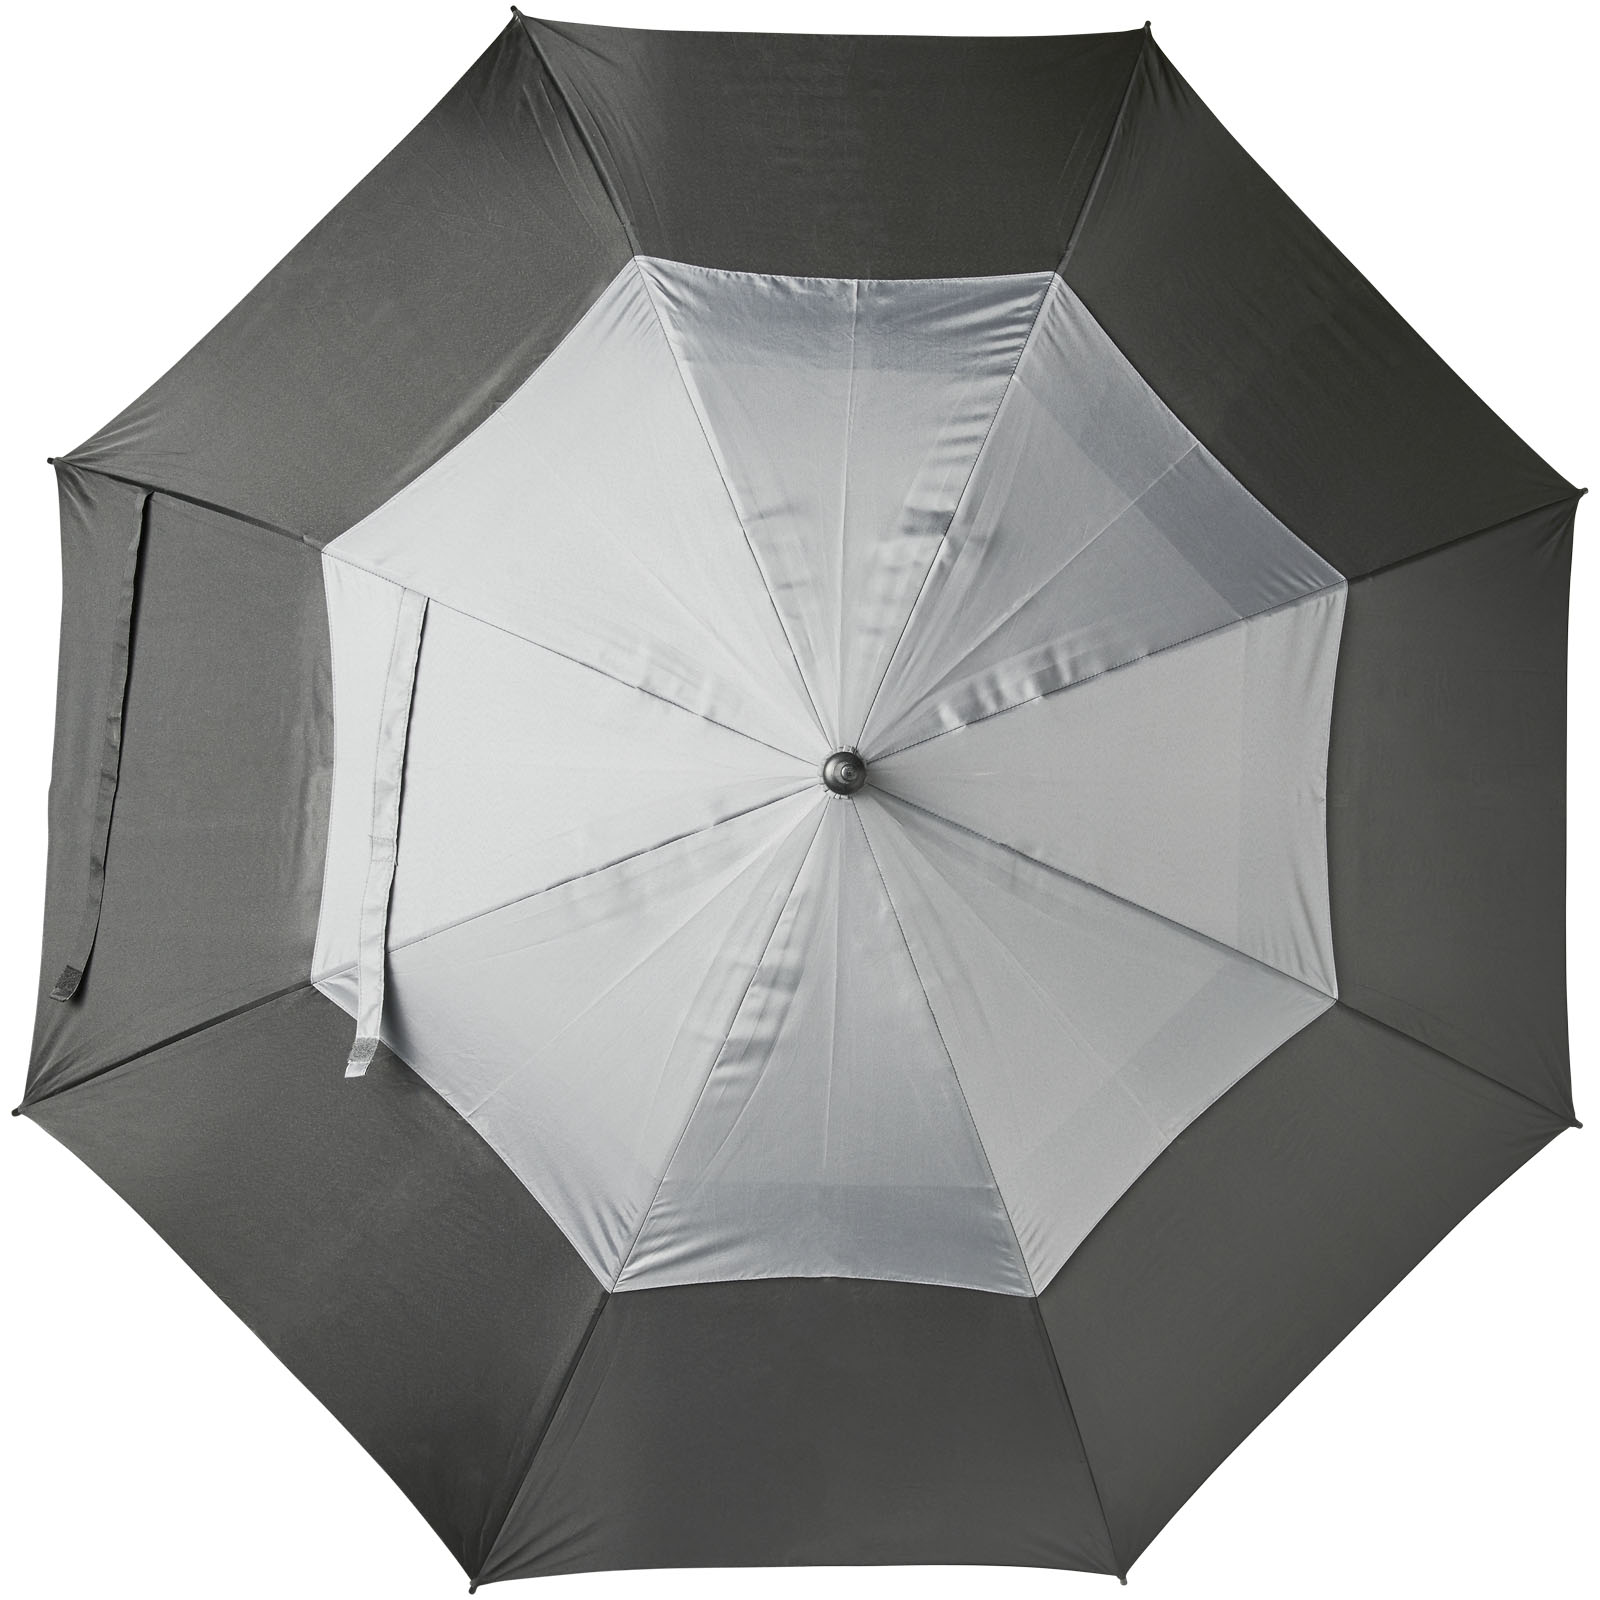 Parapluies standard publicitaires - Parapluie aéré à ouverture automatique 30